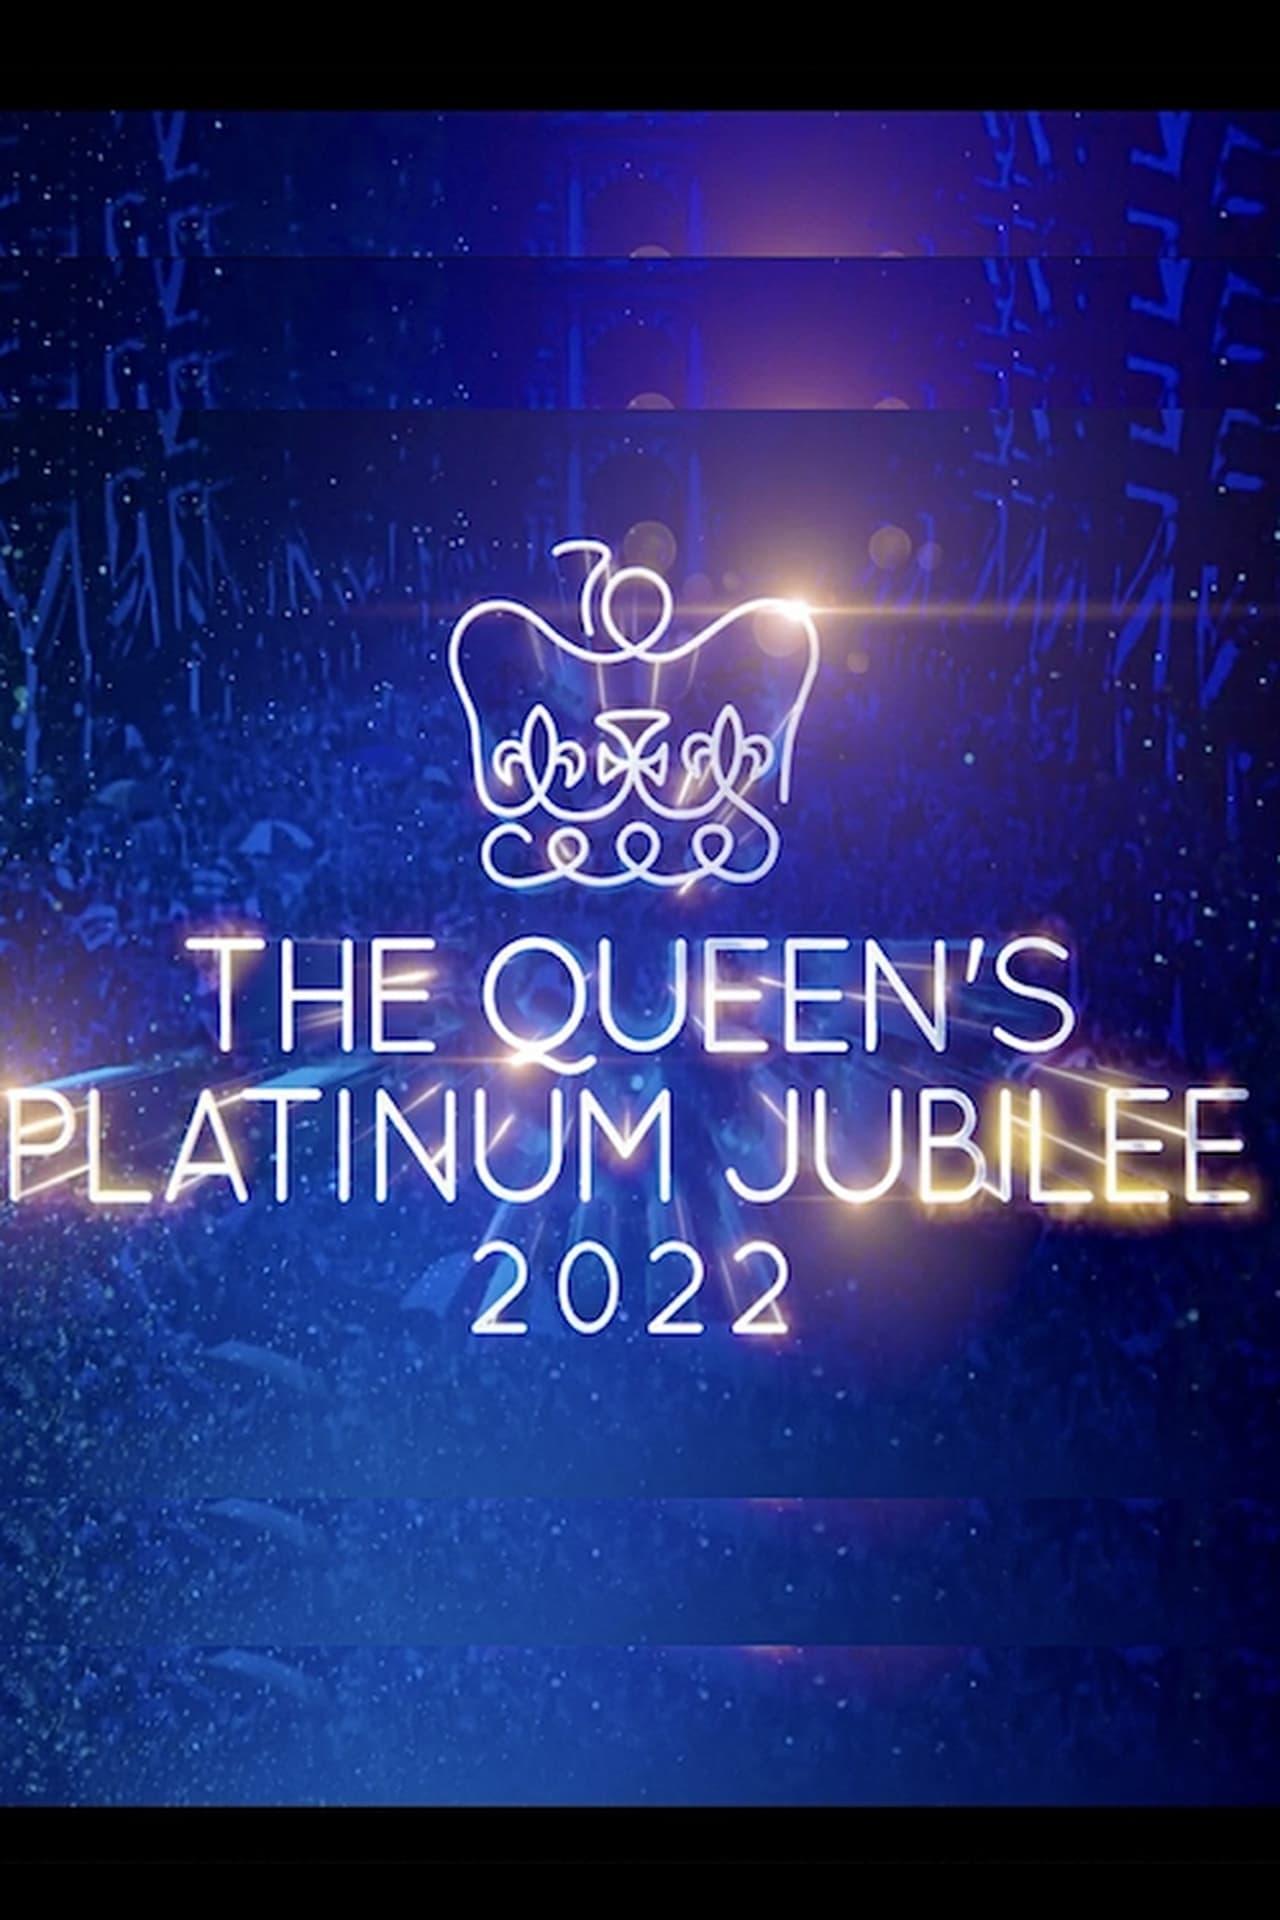 The Queen's Platinum Jubilee poster